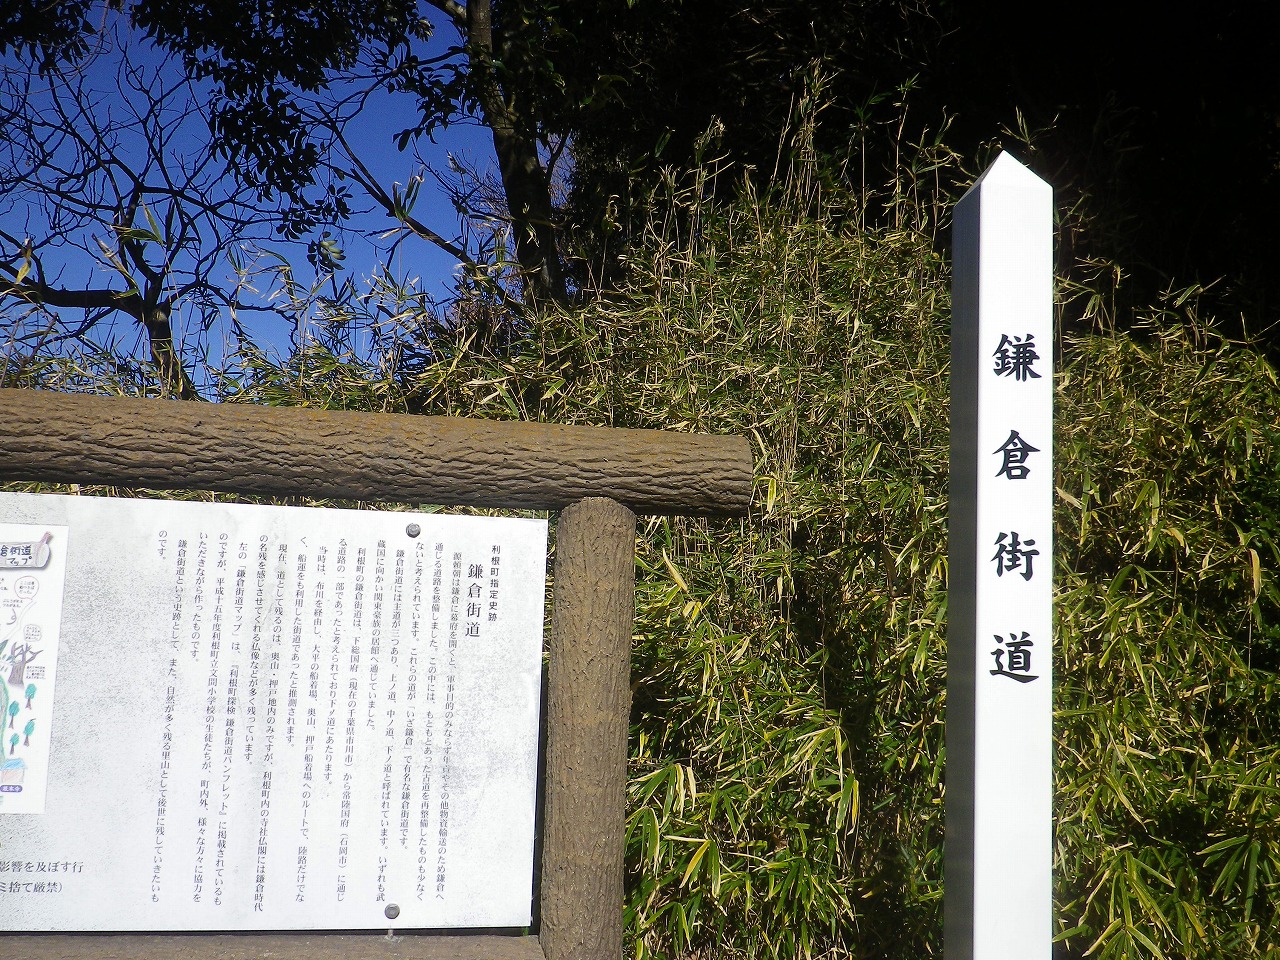 この森には”鎌倉街道”が残っています。